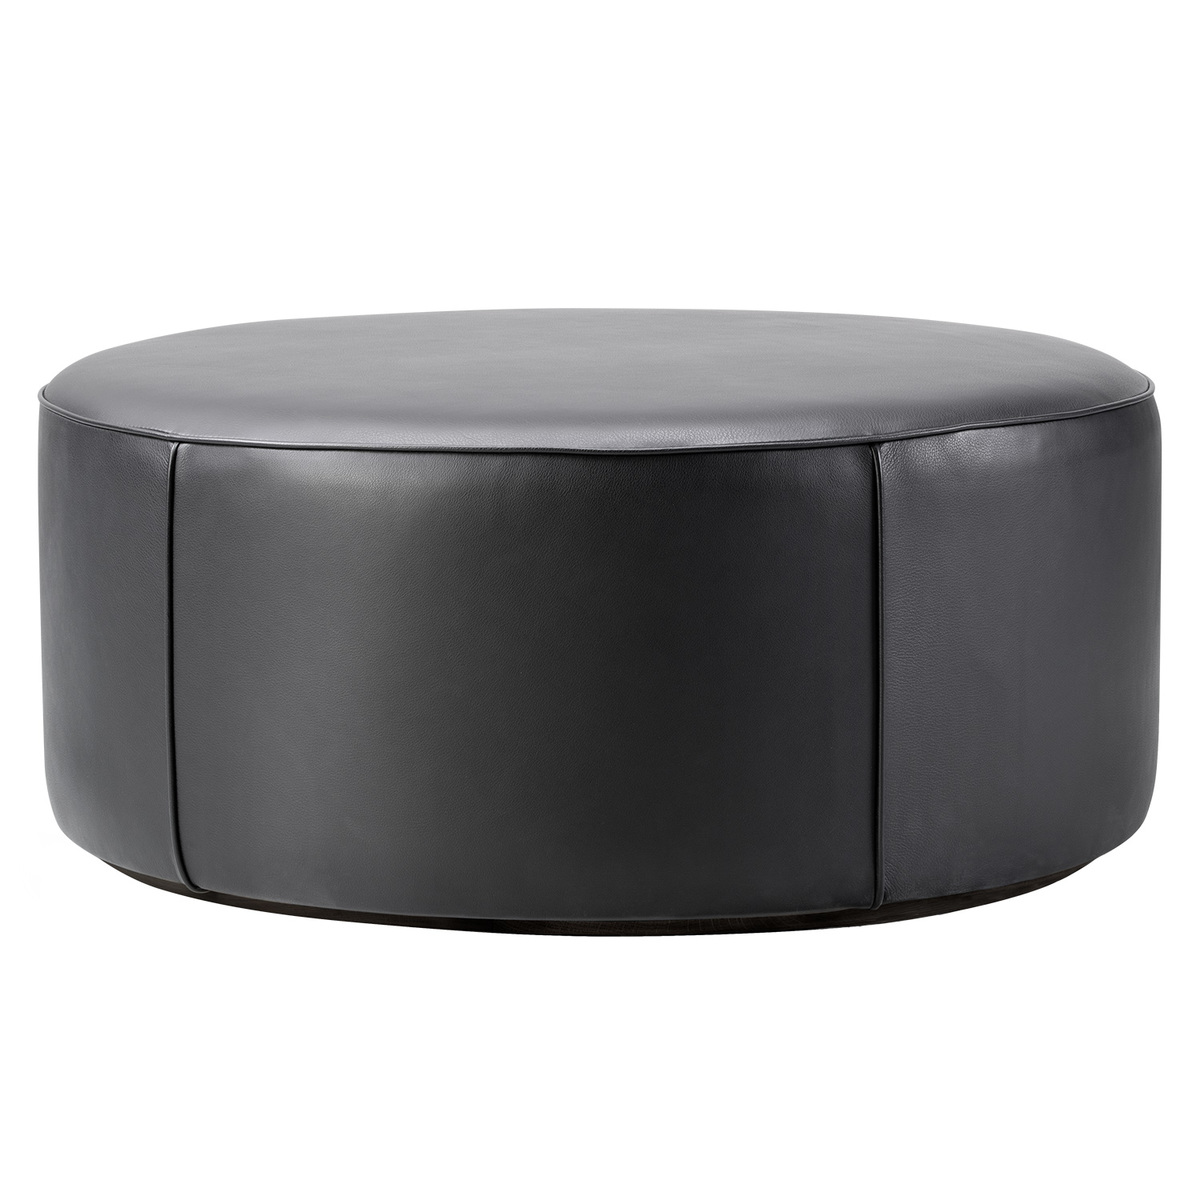 Fredericia Mono Pouf 90 Cm Black, Black Leather Round Ottoman